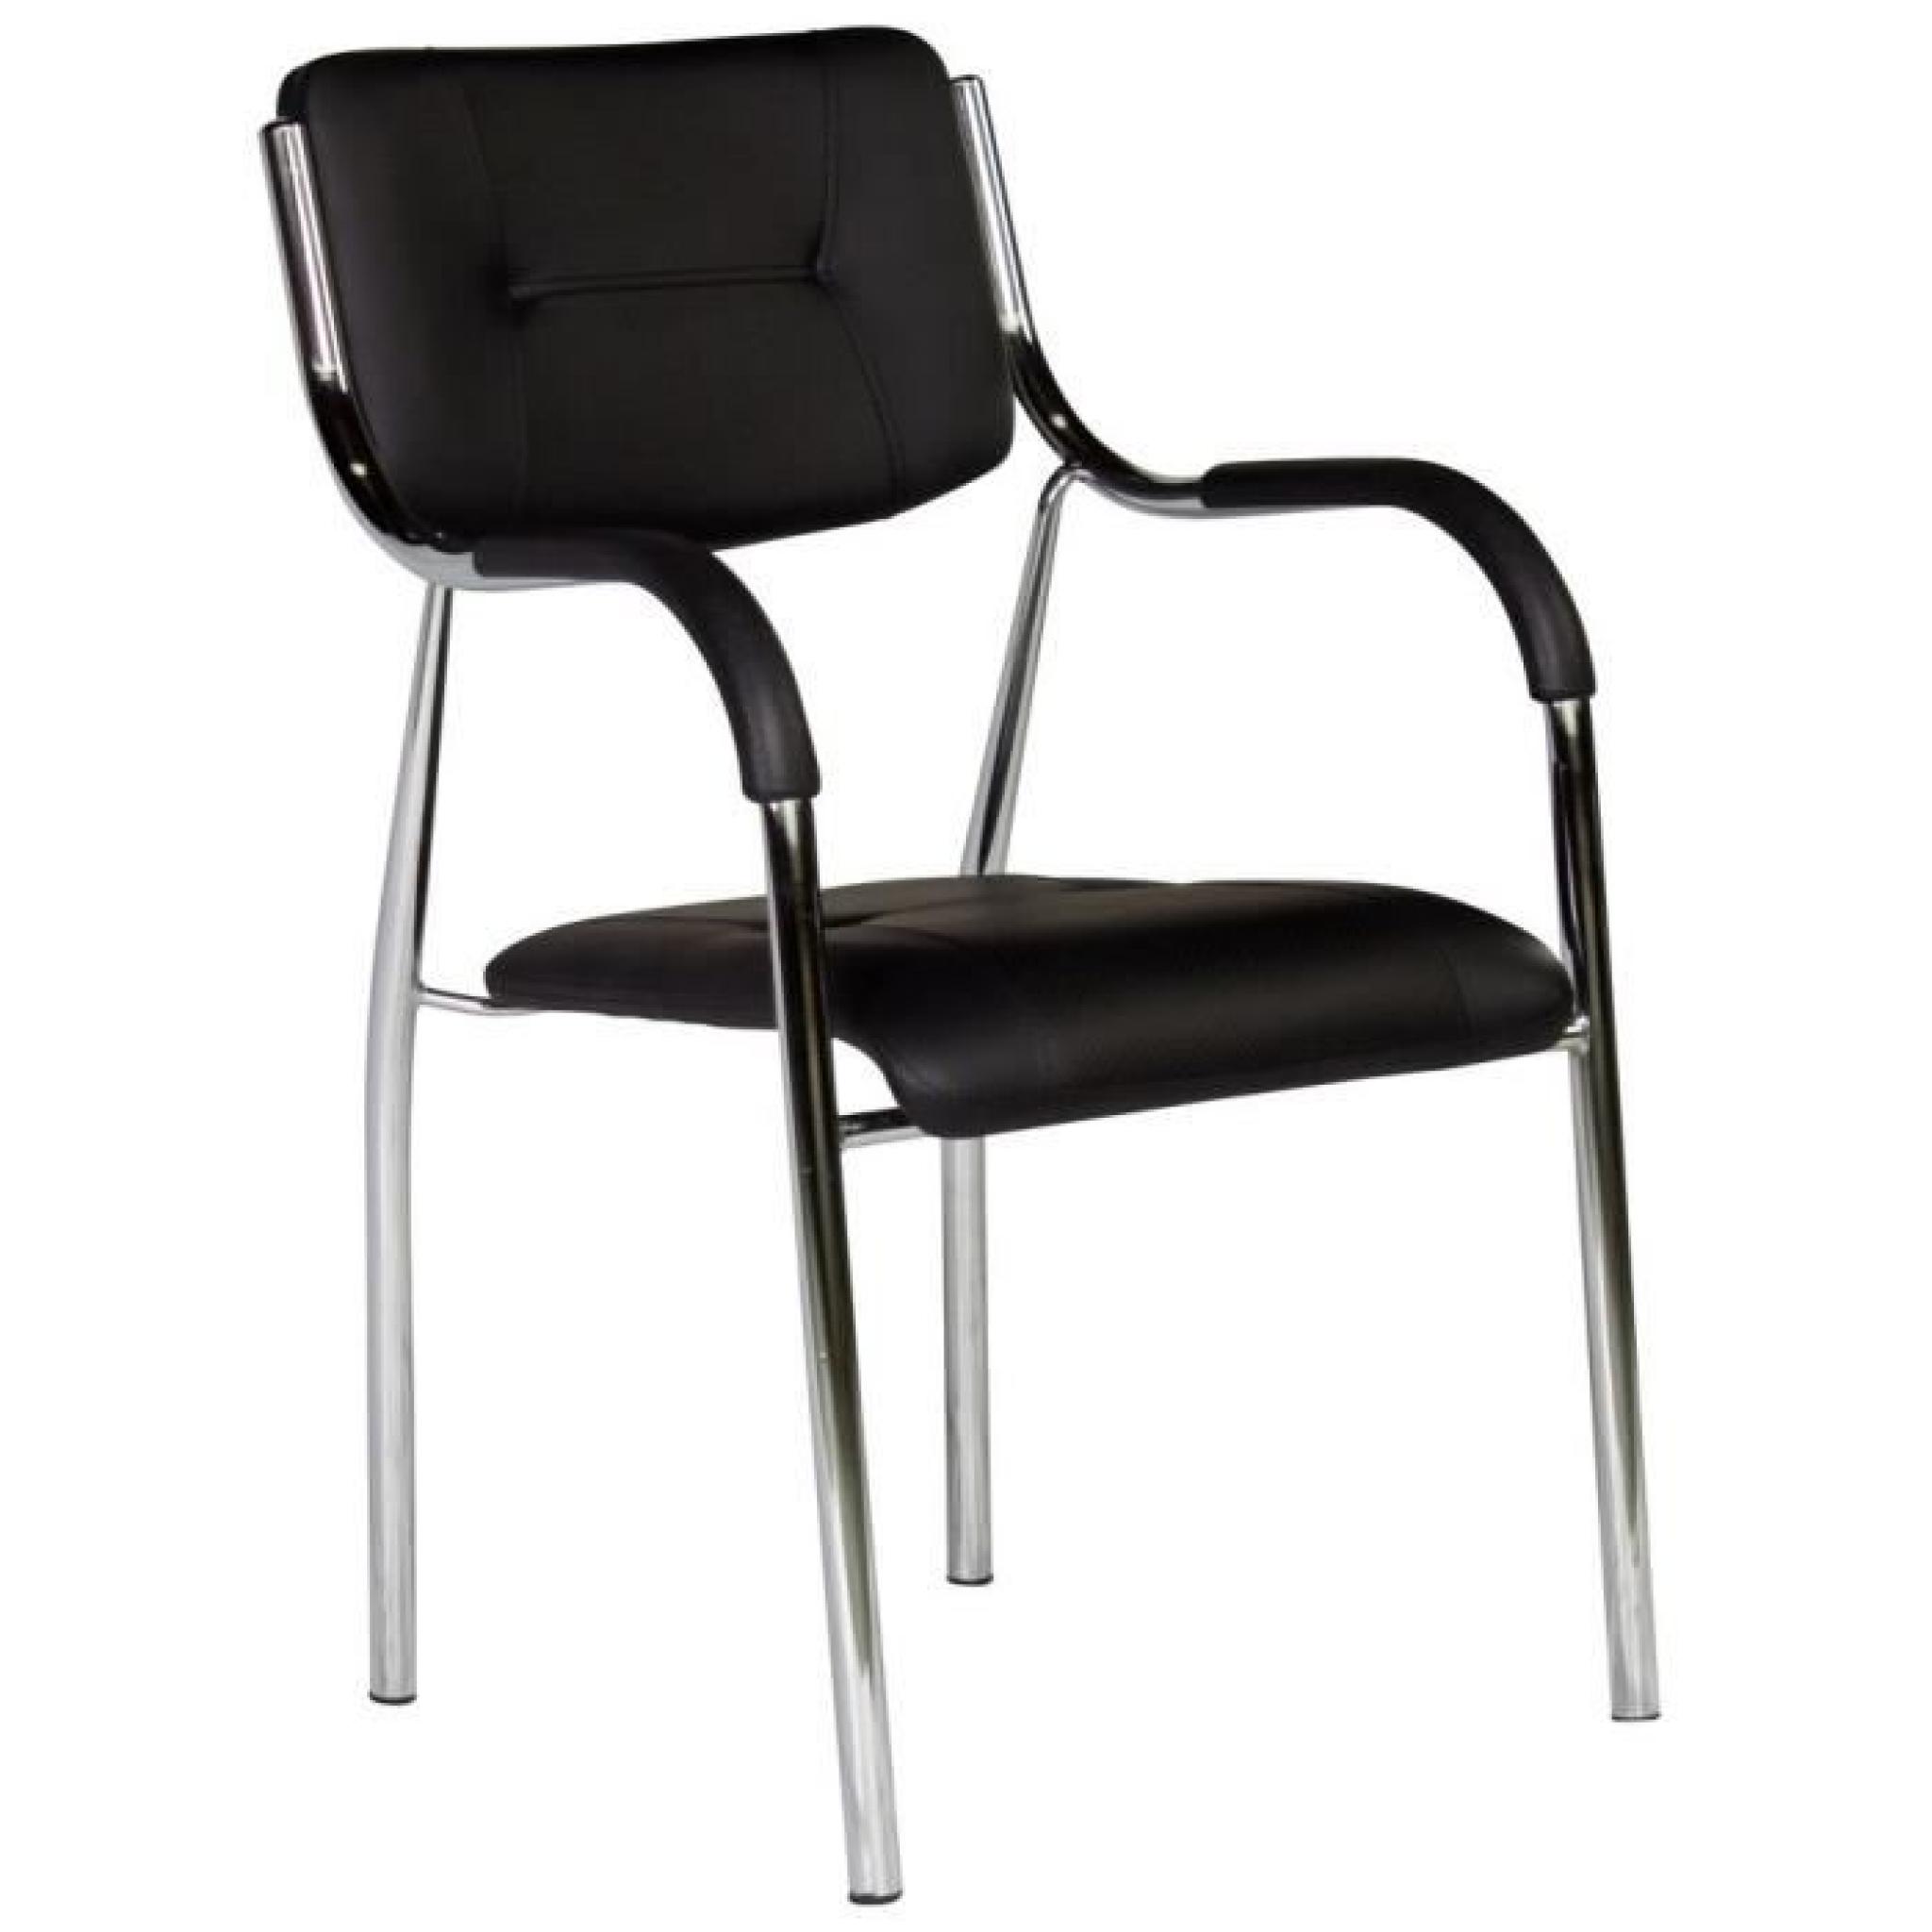 Chaise avec accoudoirs ultra moderne coloris noir